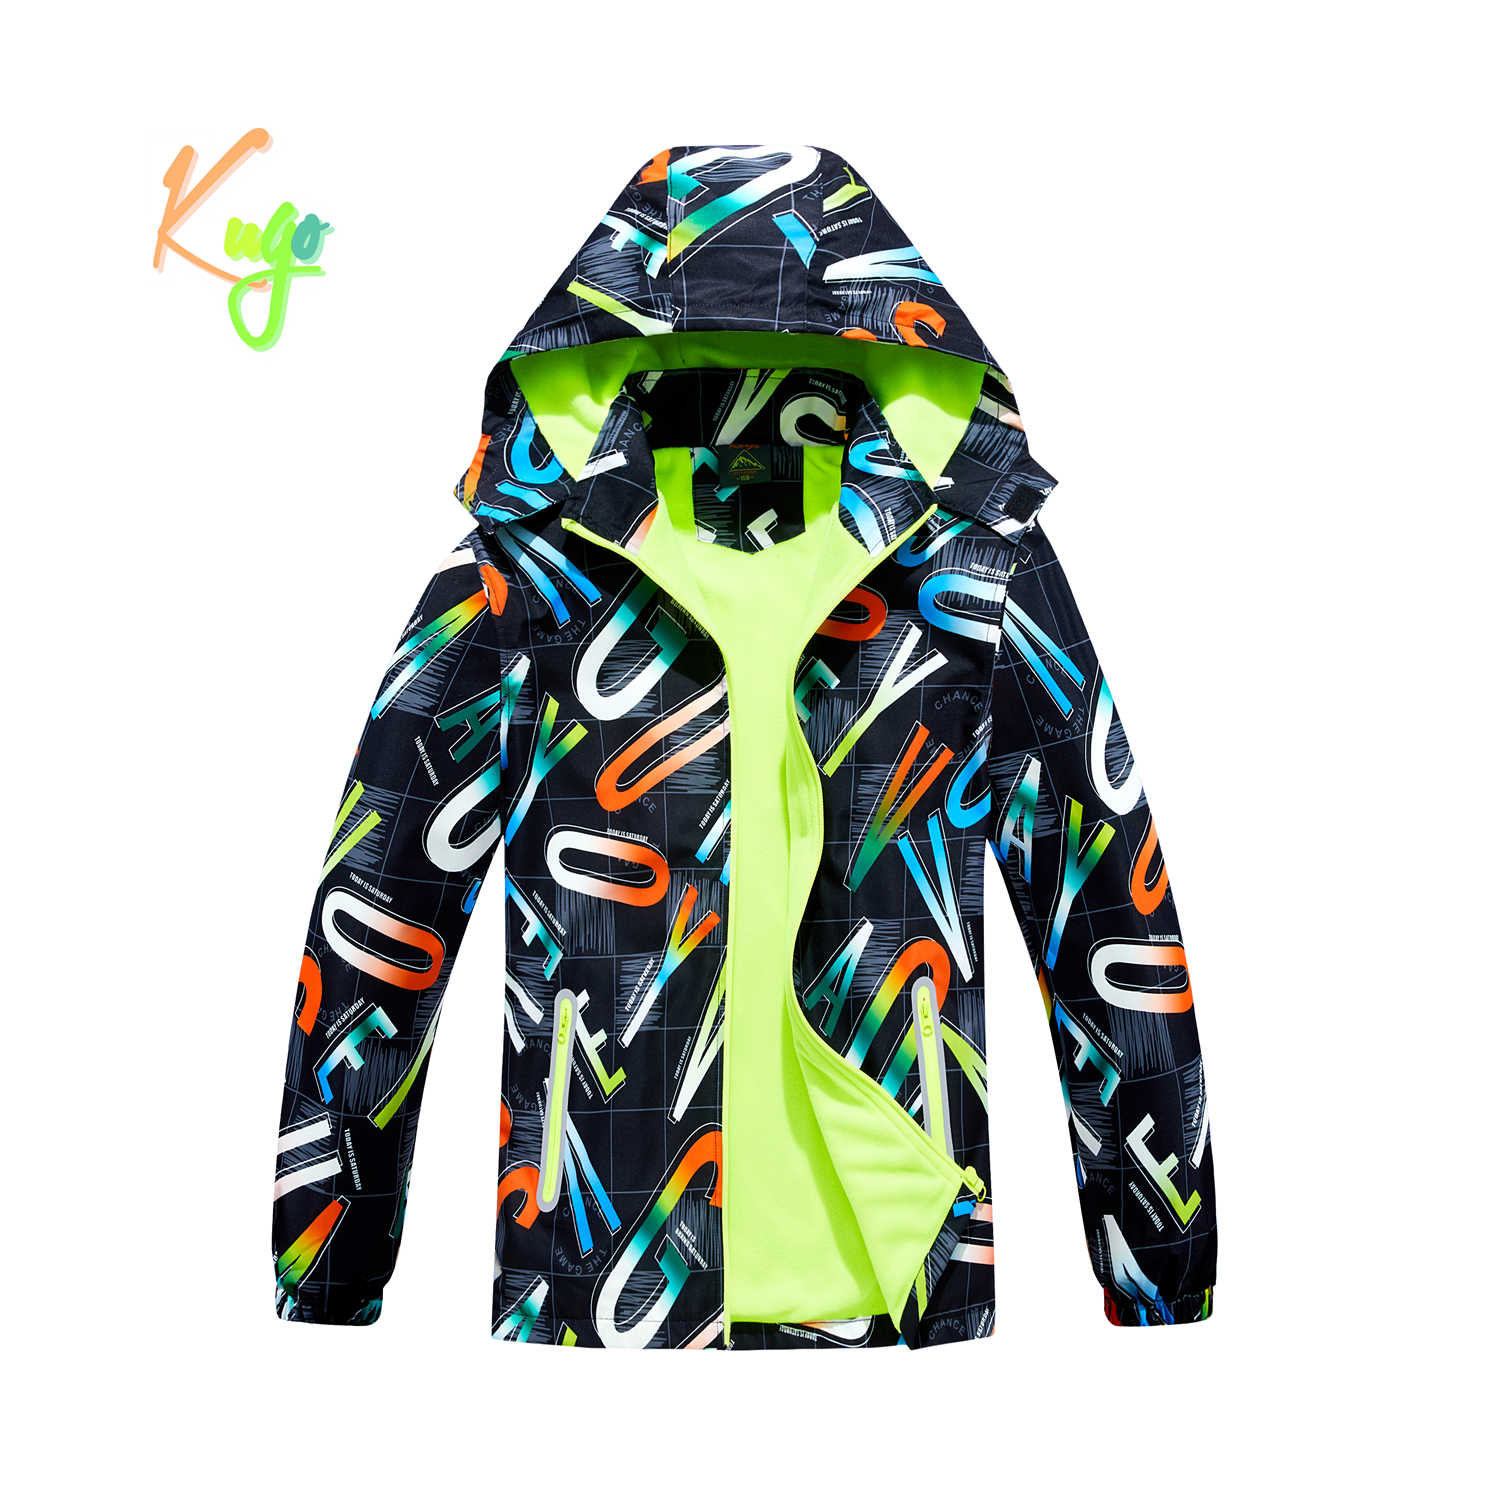 Chlapecká podzimní bunda, zateplená - KUGO B2859, černá, písmena Barva: Černá, Velikost: 158